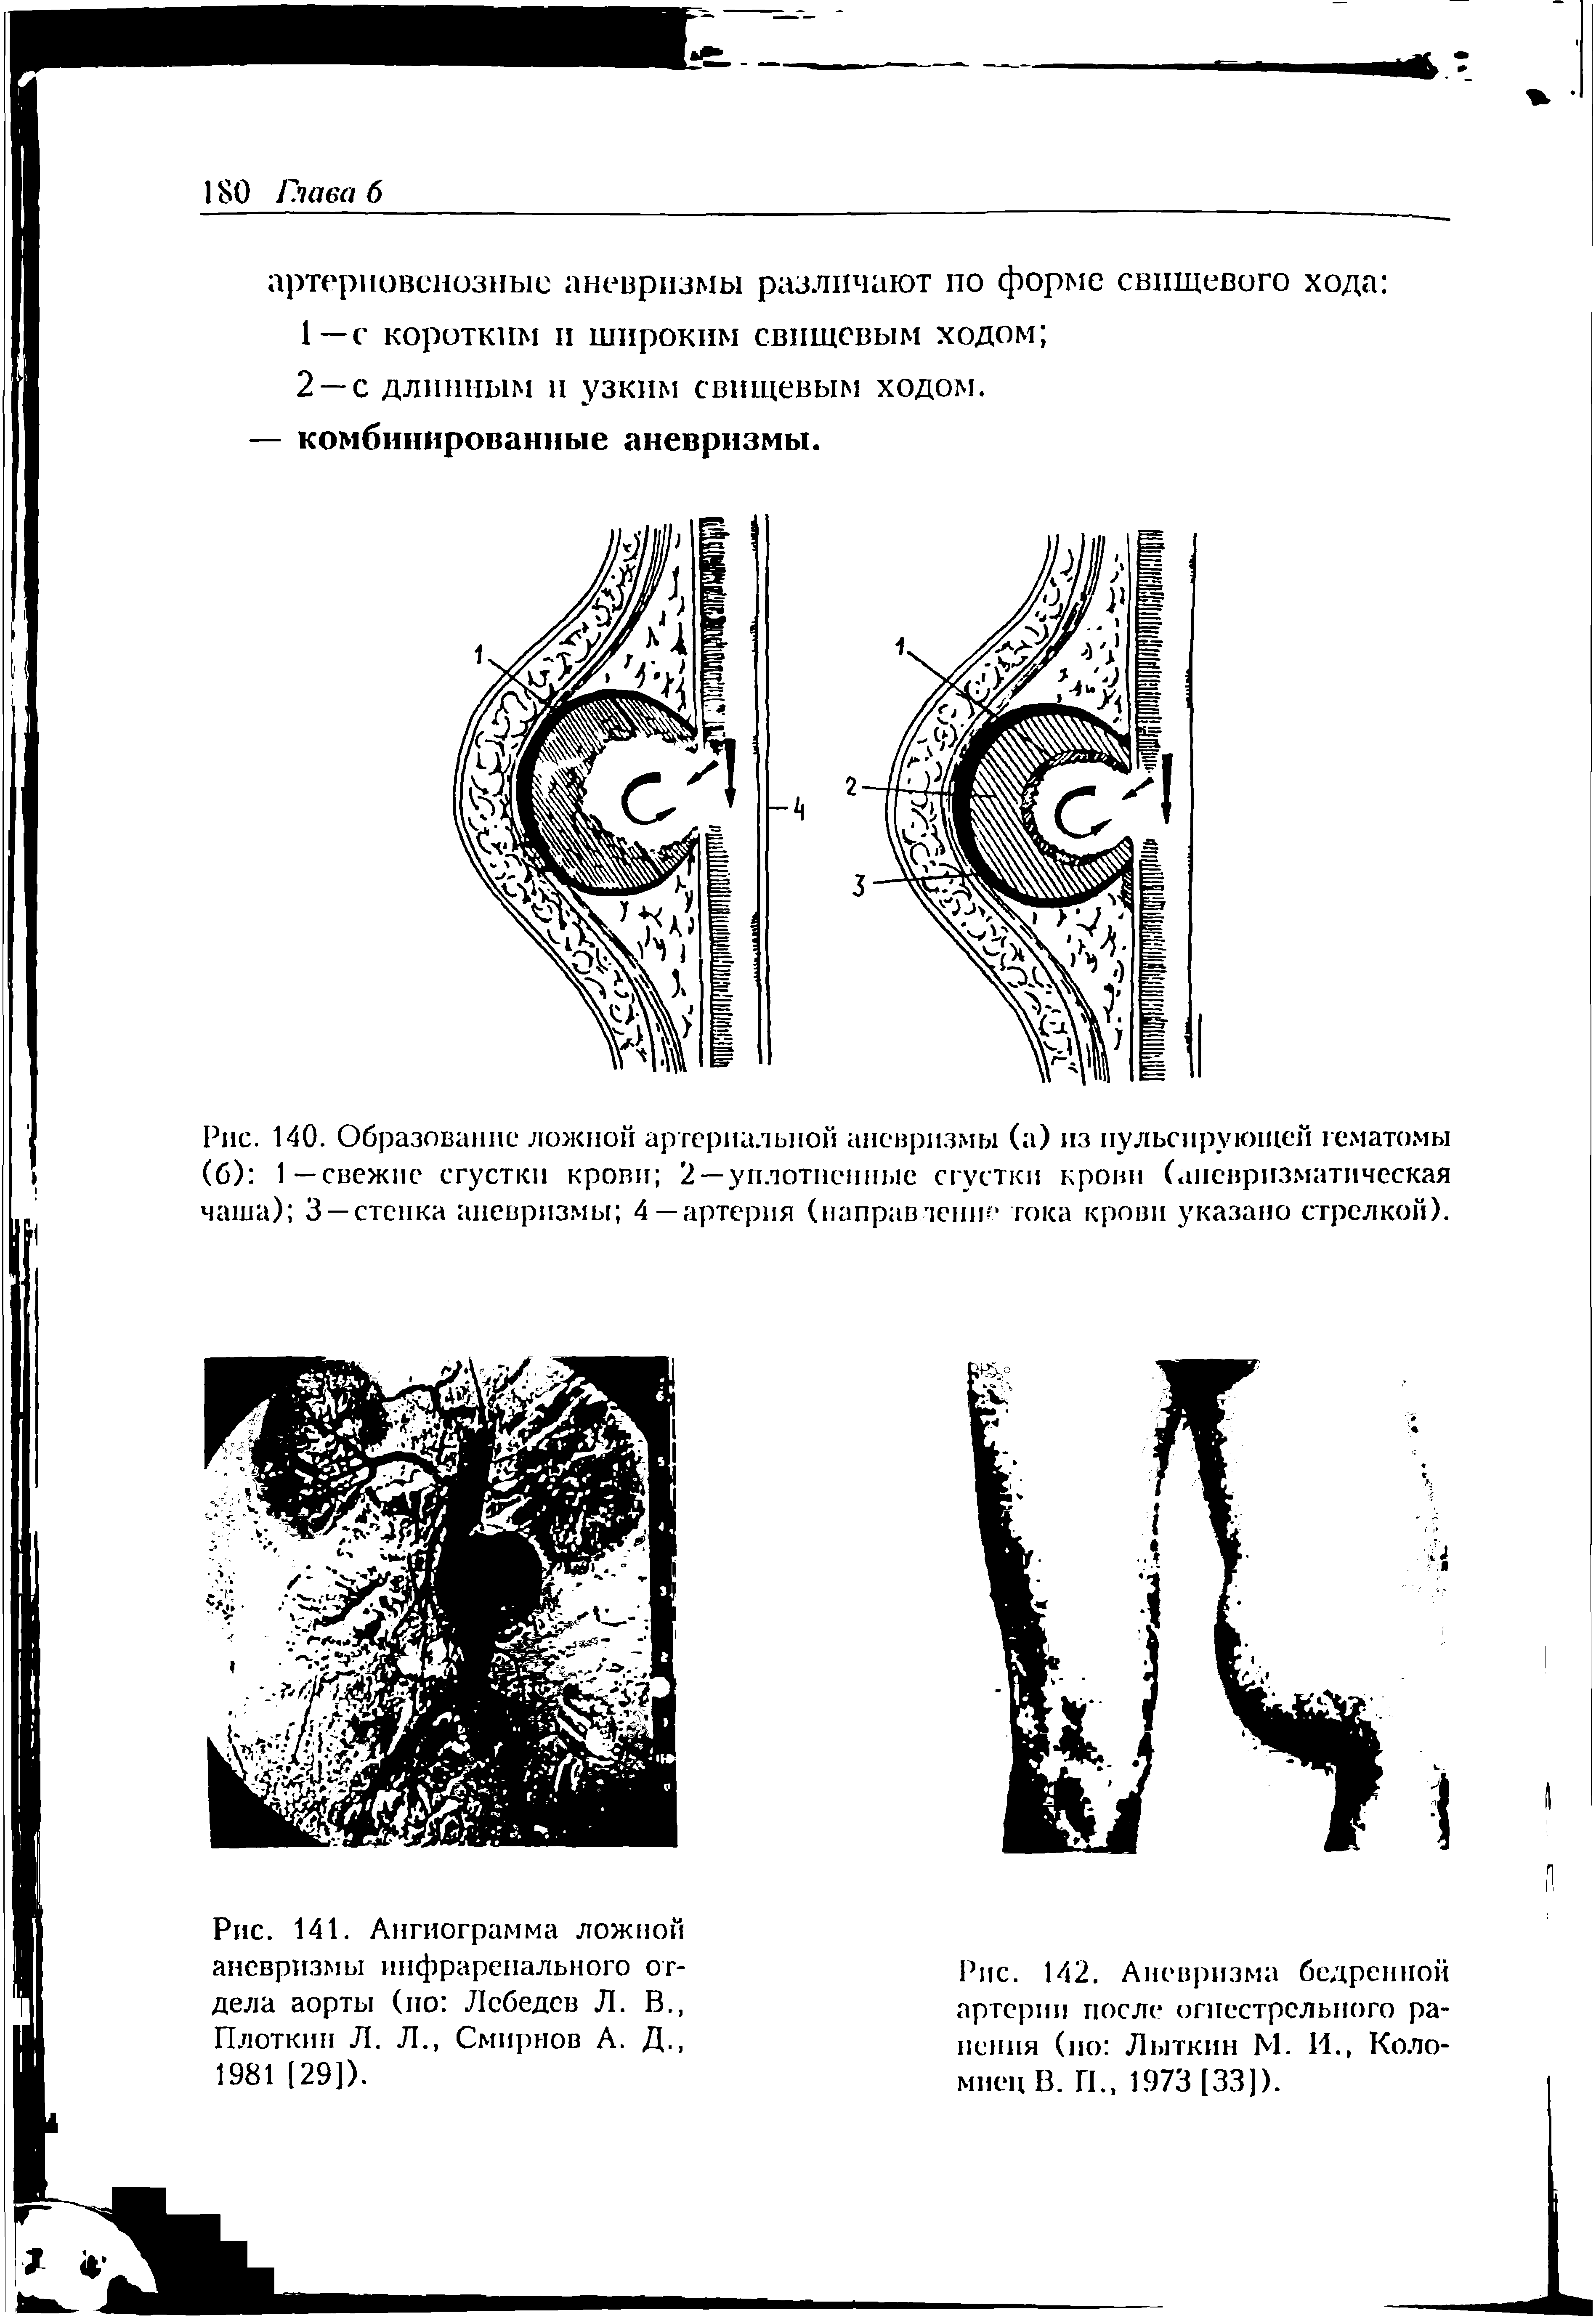 Рис. 142. Аневризма бедренной артерии после огнестрельного ранения (ио Лыткин М. И., Коломиец В. Г1. 1973 [33]).